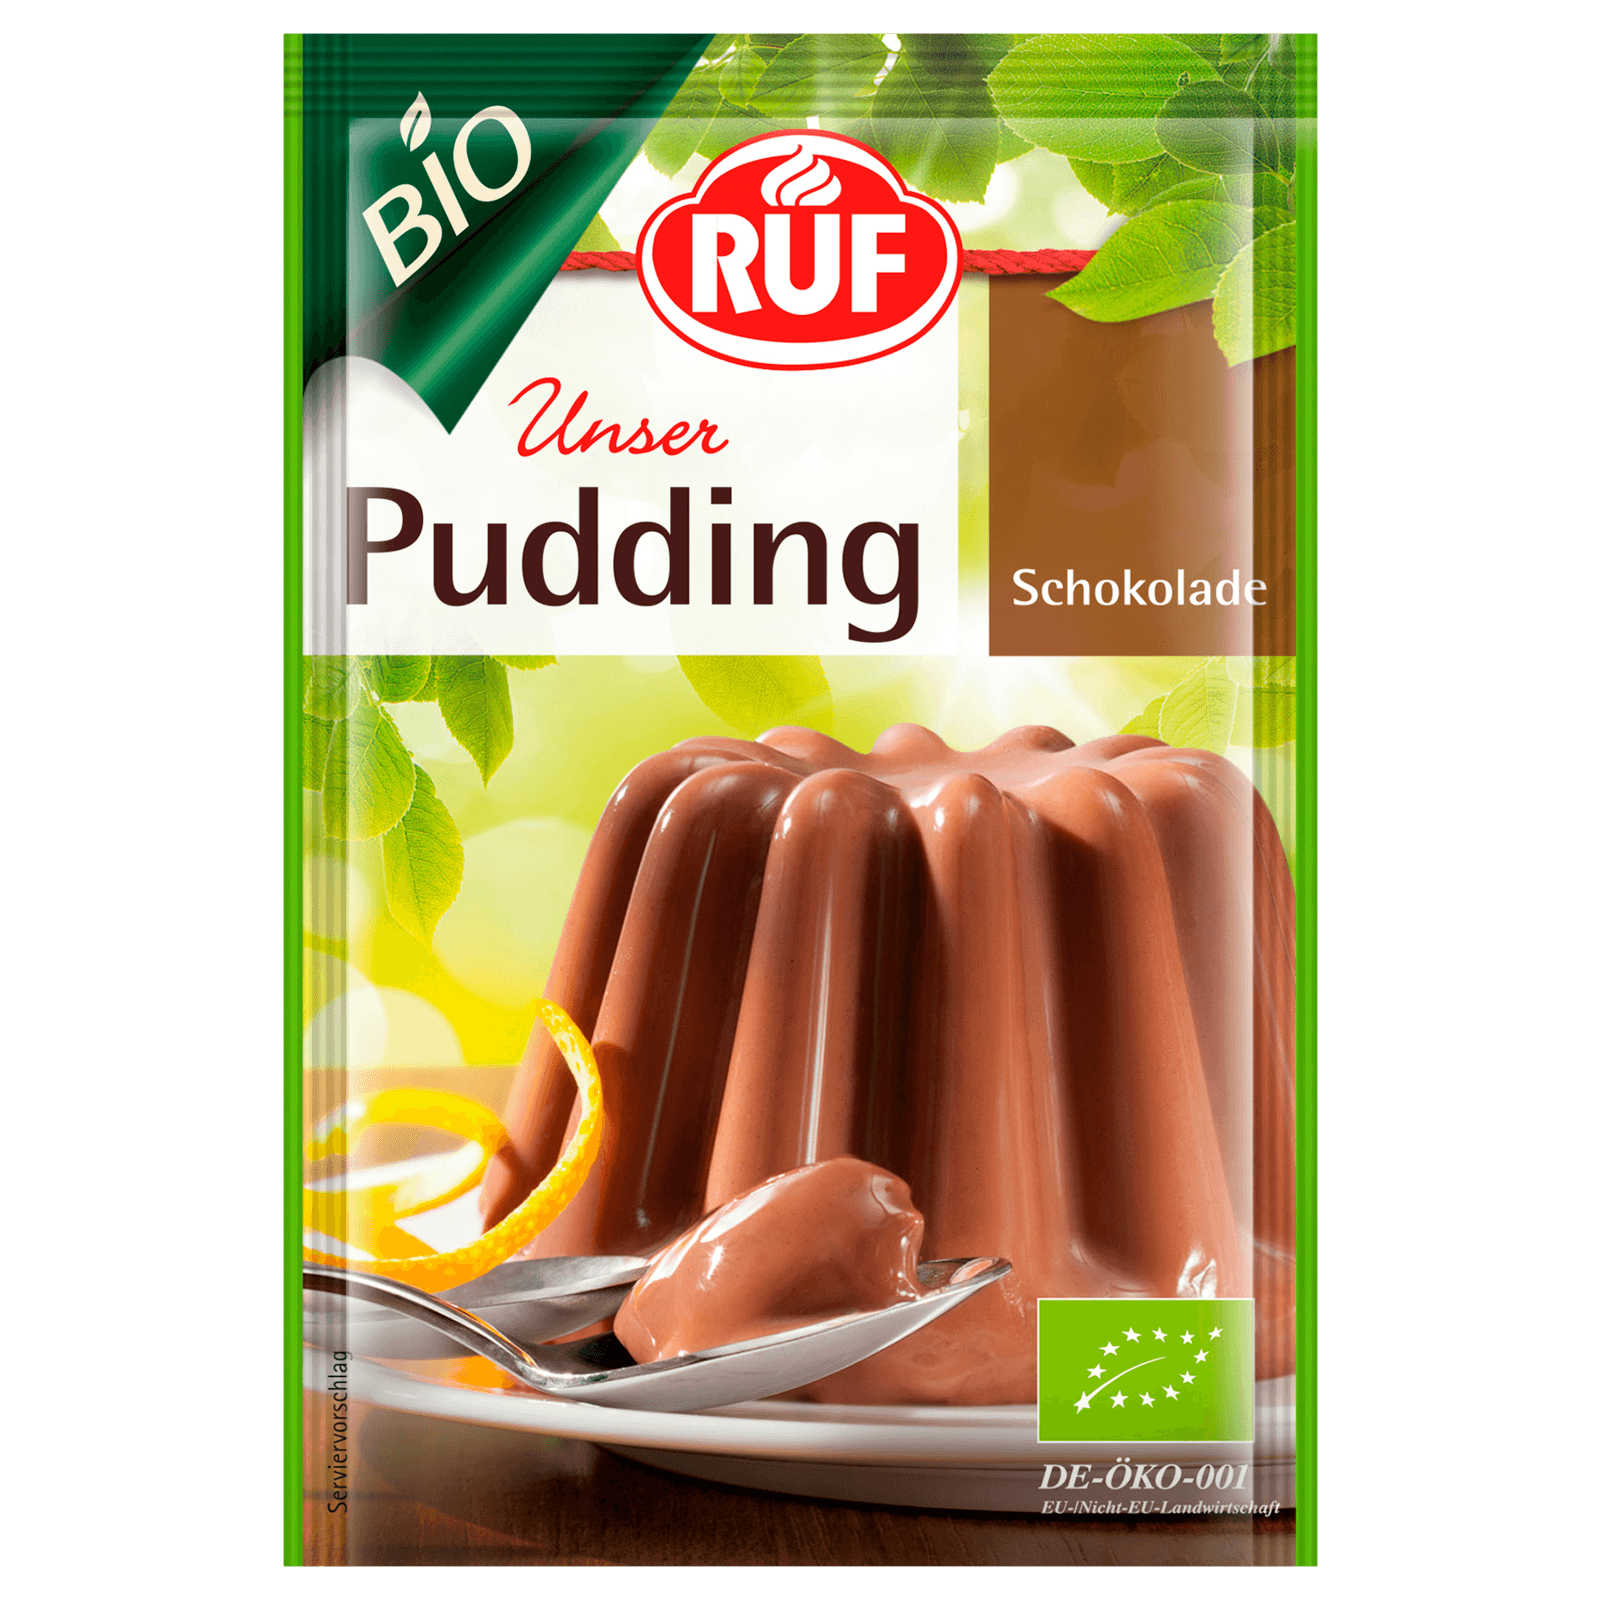 Ruf Bio Pudding Schokolade 92g